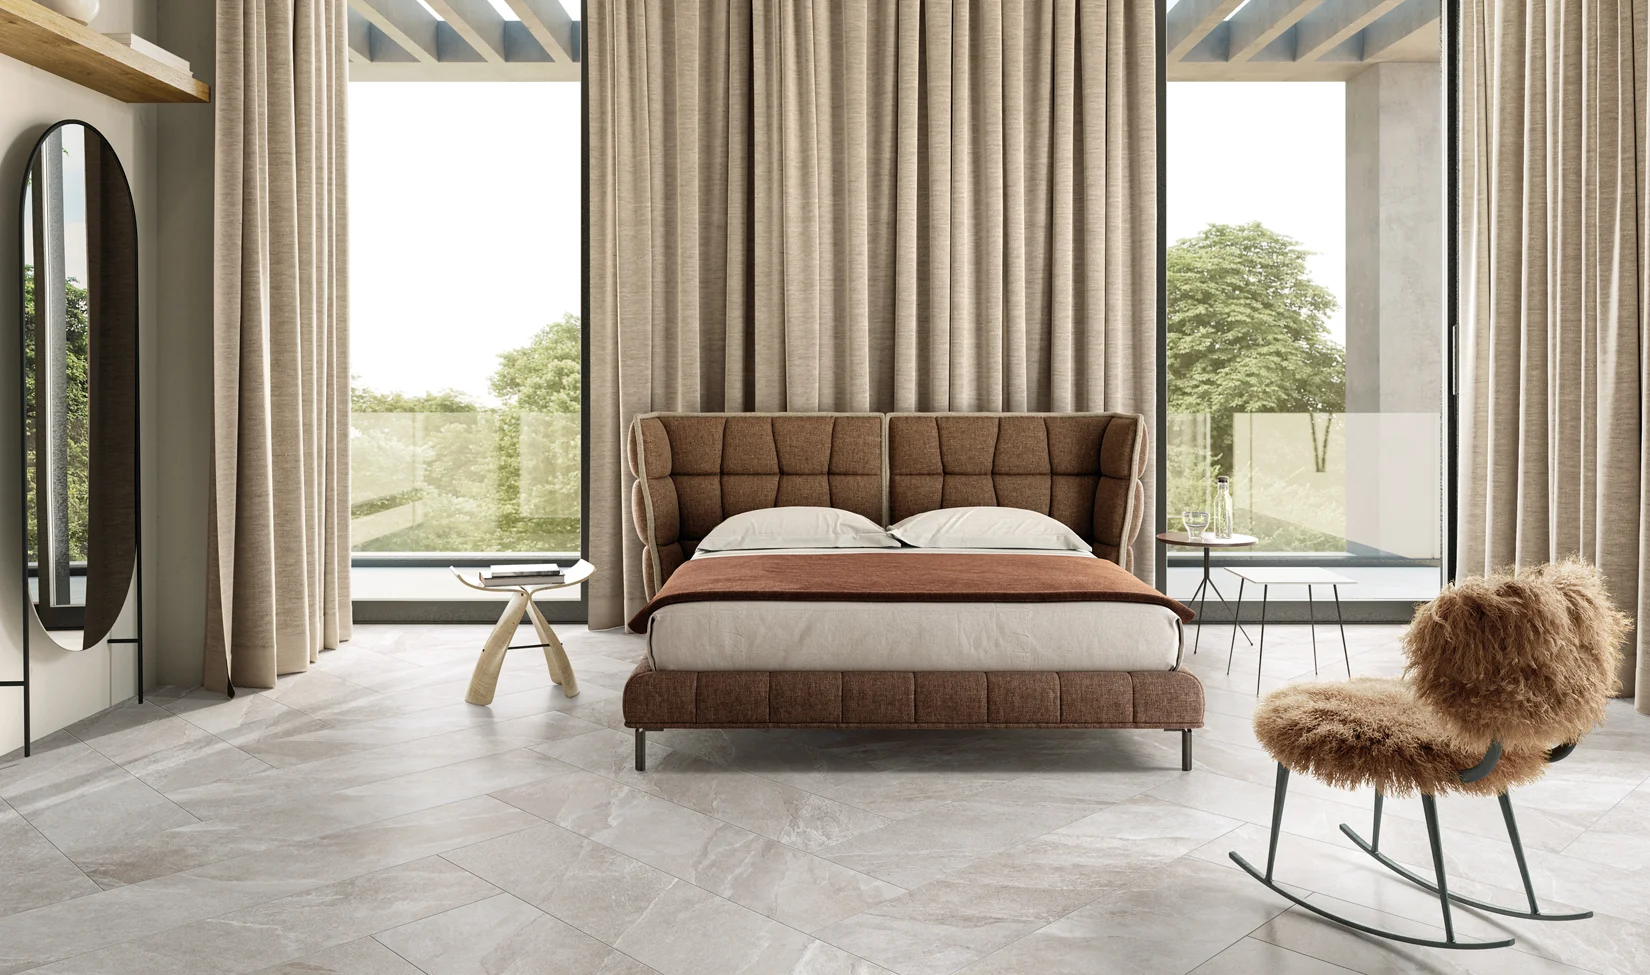 Camera da letto moderna con pavimento in gres porcellanato Ubik colore Grey, letto imbottito marrone, ampie finestre con vista naturale.